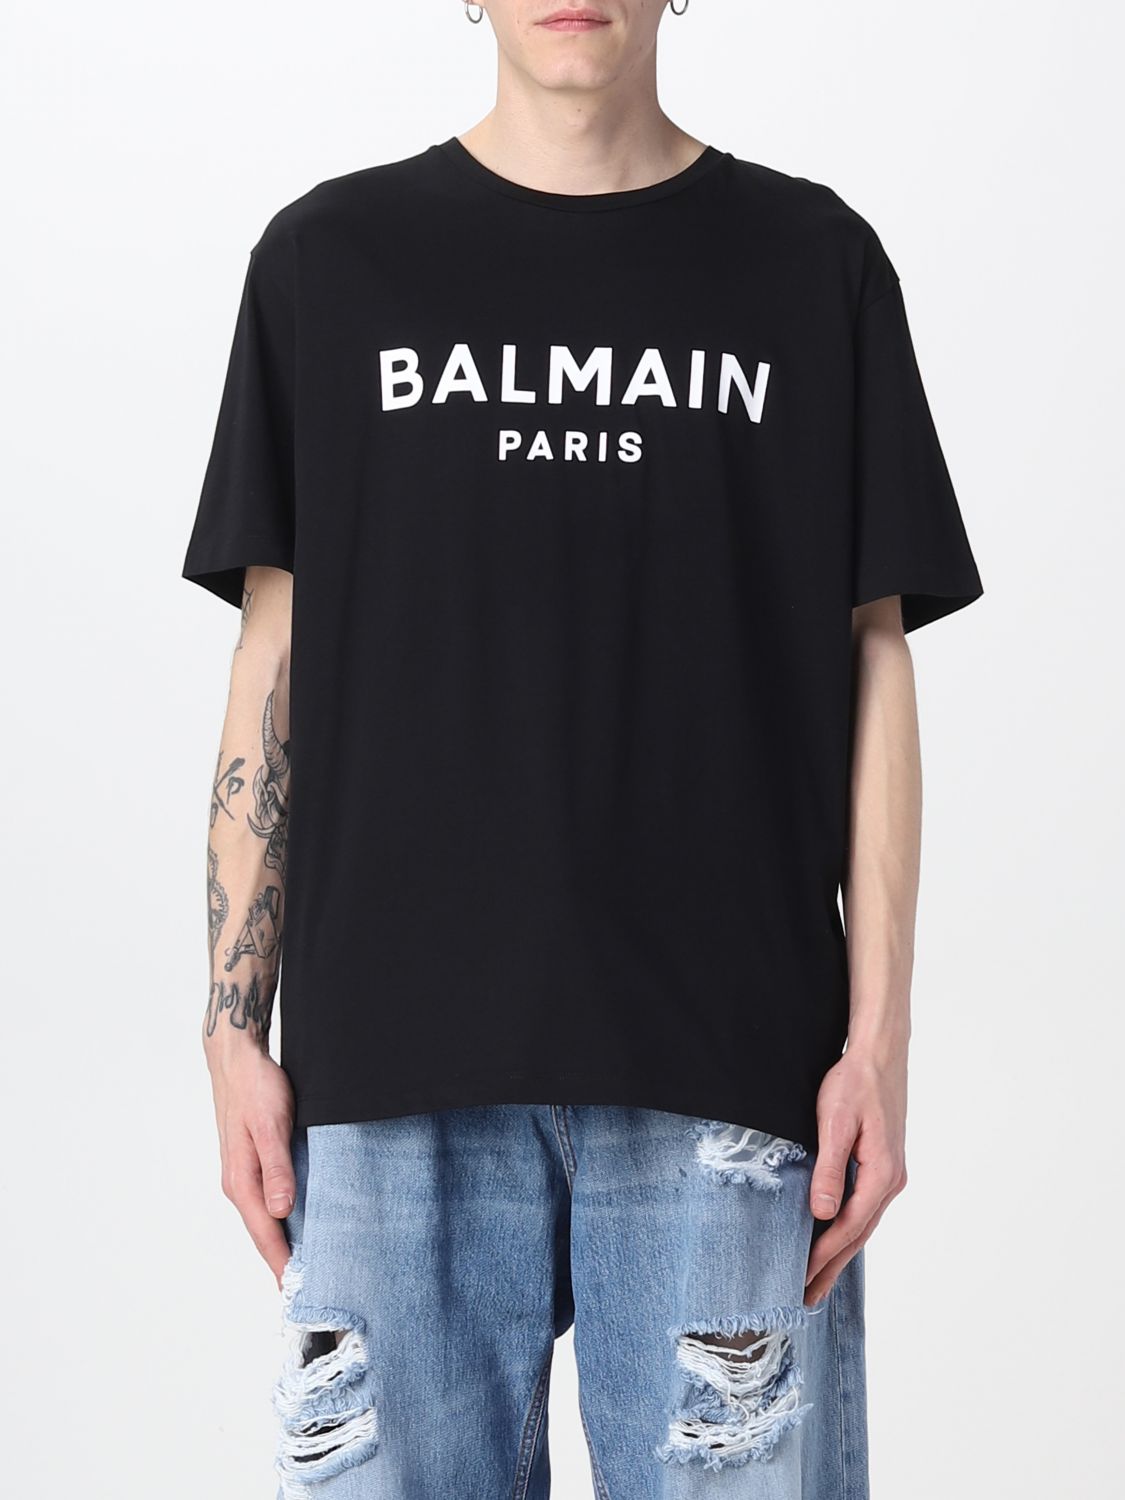 Balmain T-shirt Men | ModeSens